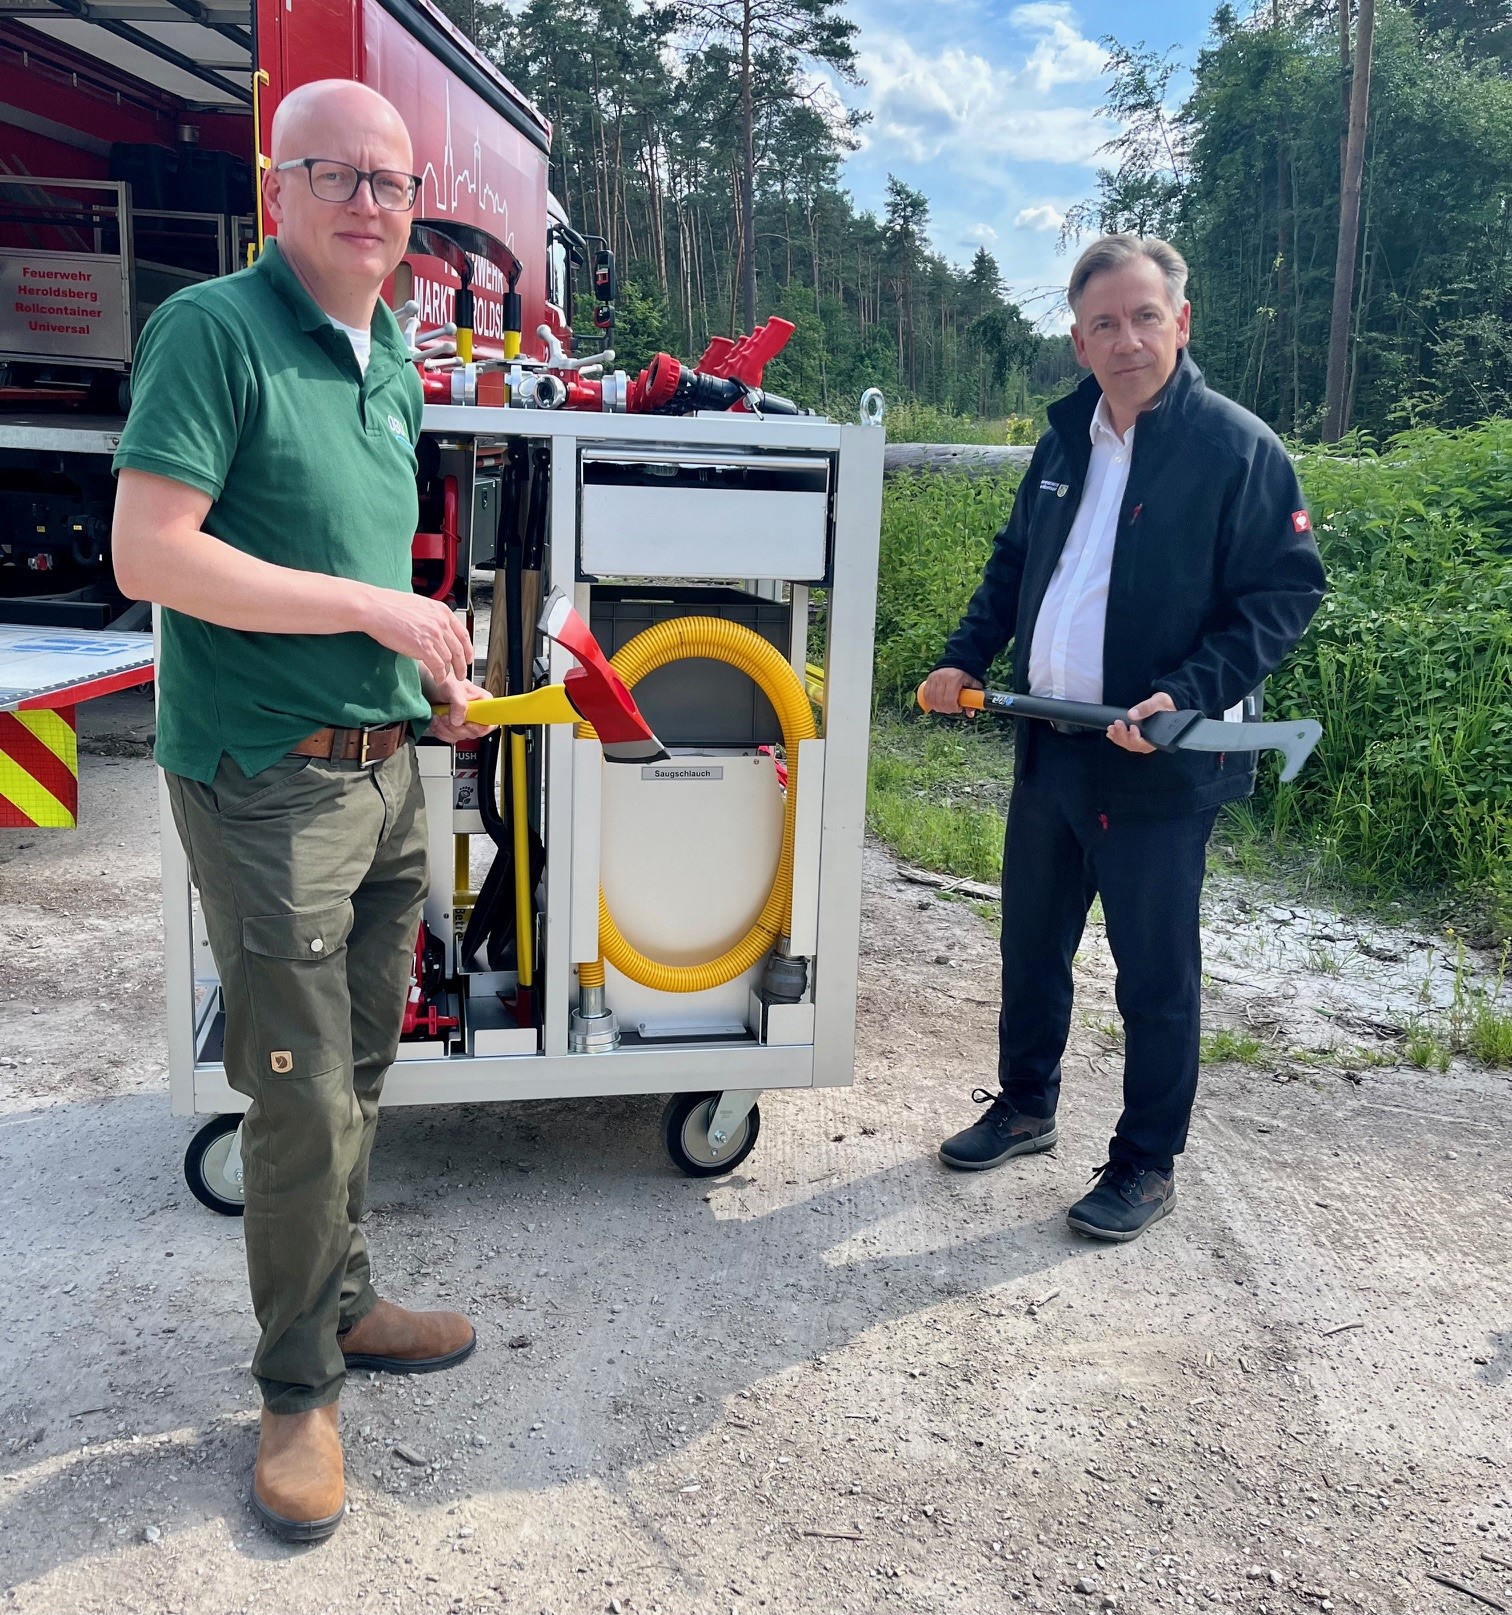 Landrat Tritthart (r.) und Christian Sürie vom DBU Naturerbe begutachten das Regnersystem, das der Feuerwehr Heroldsberg übergeben wurde